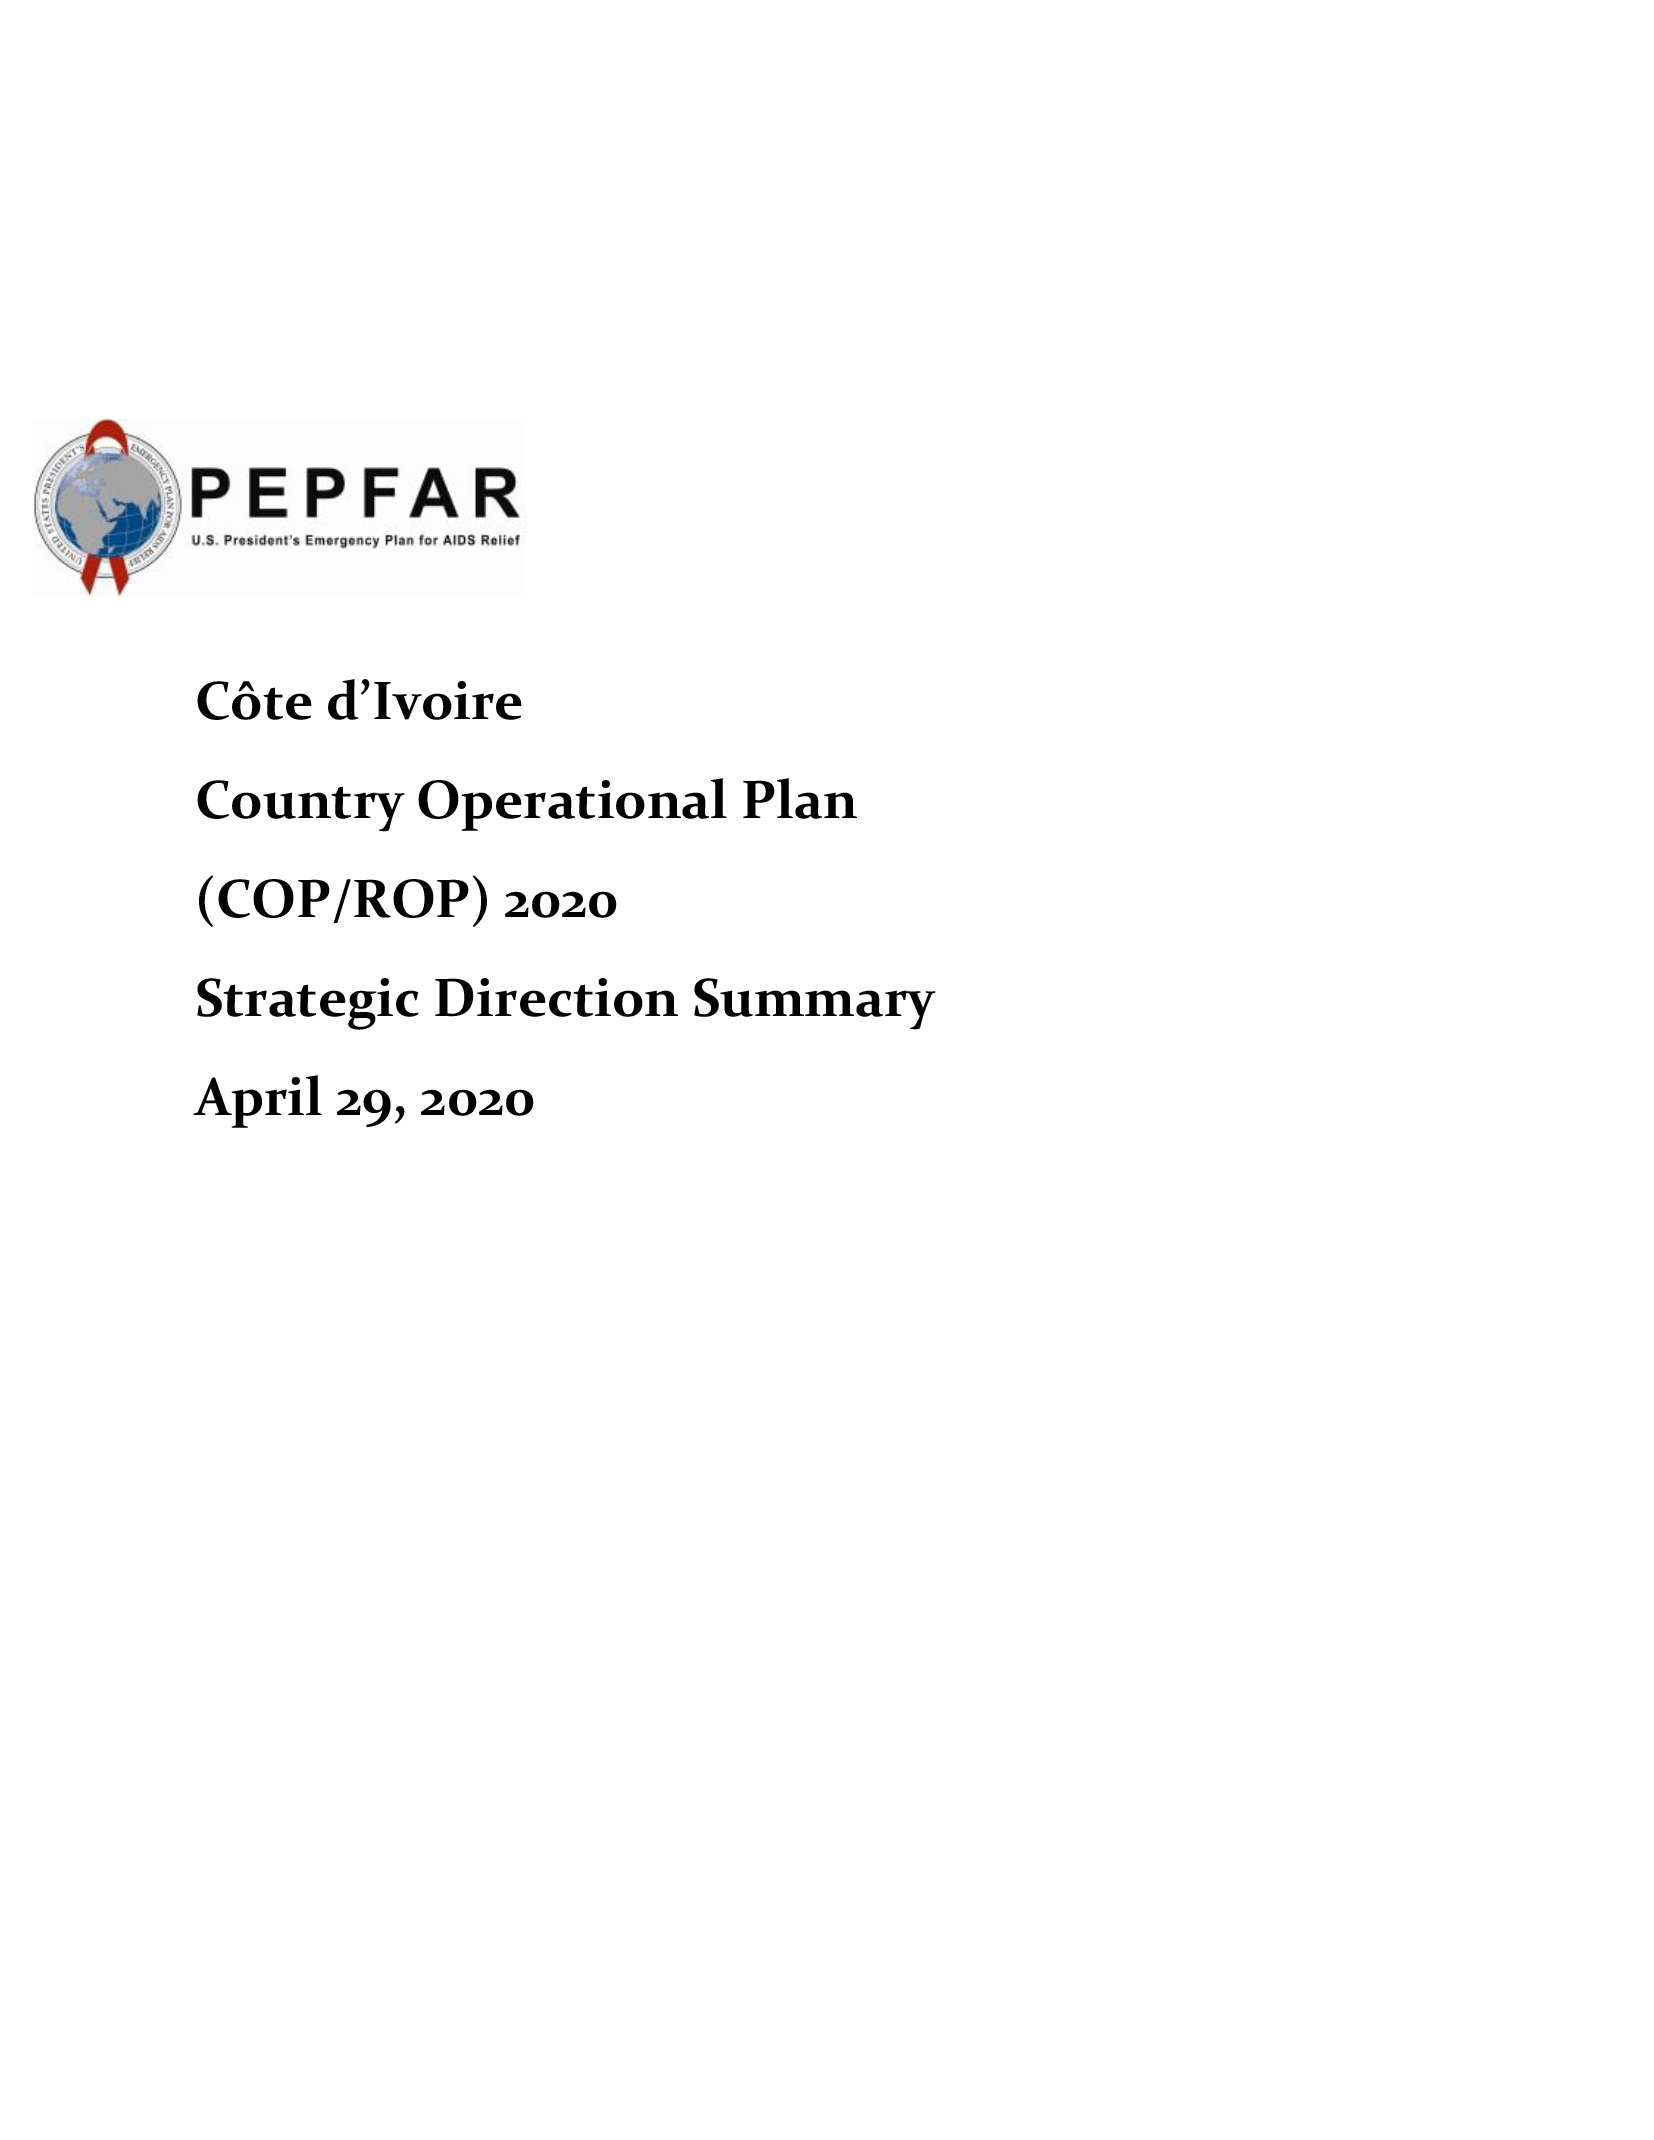 Resumen de la dirección estratégica del Plan Operativo Nacional de Costa de Marfil (COP/ROP) 2020 Portada